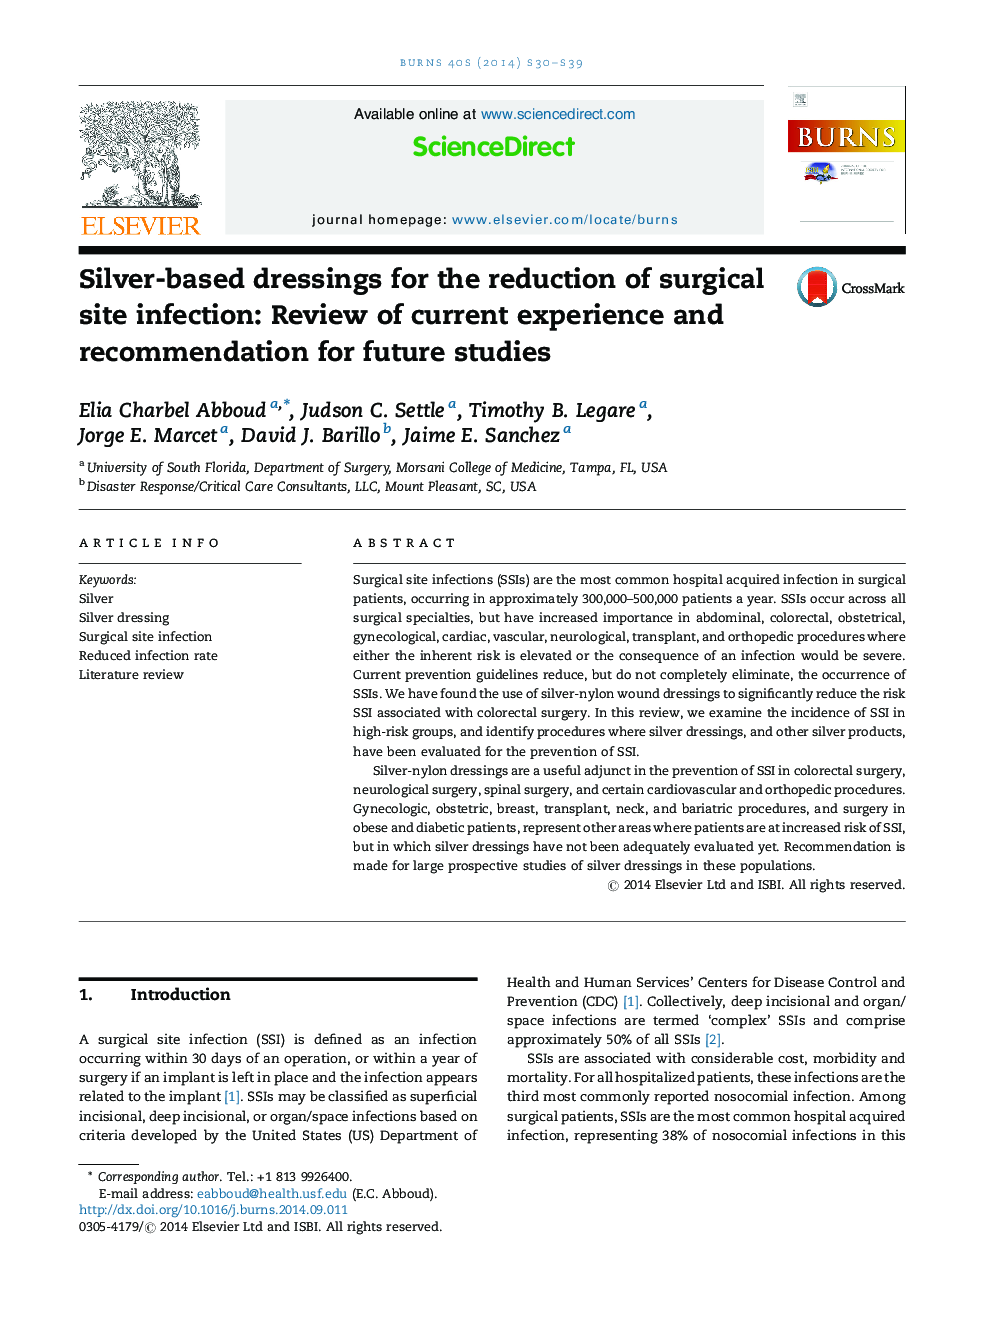 پانسمان بر پایه نقره ای برای کاهش عفونت محل جراحی: بررسی تجربیات و توصیه های قبلی برای مطالعات آینده 